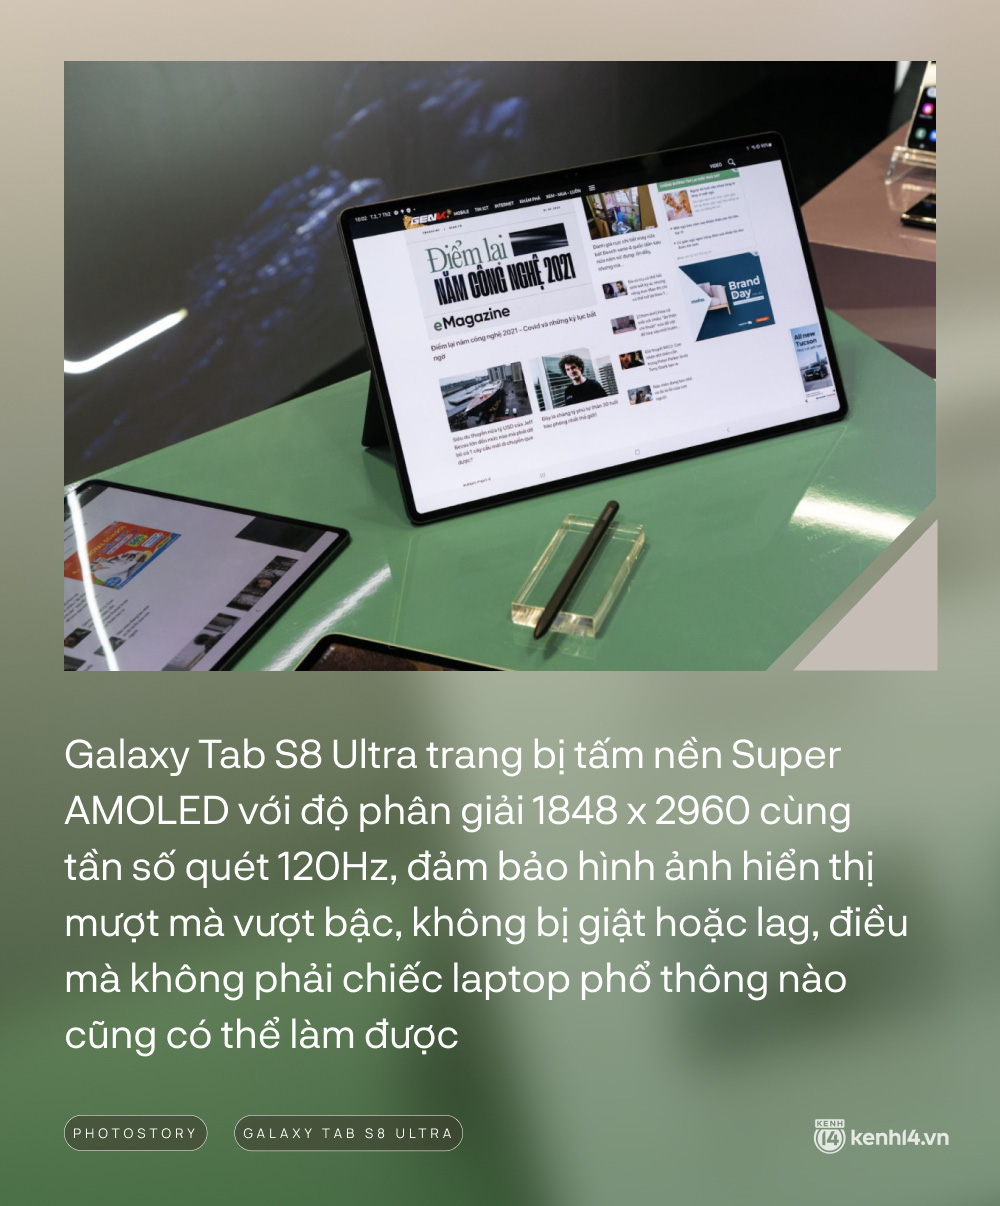 Lần đầu tiên Samsung ra mắt Galaxy Tab với màn hình “cực đại” 14.6 inches - ảnh 2